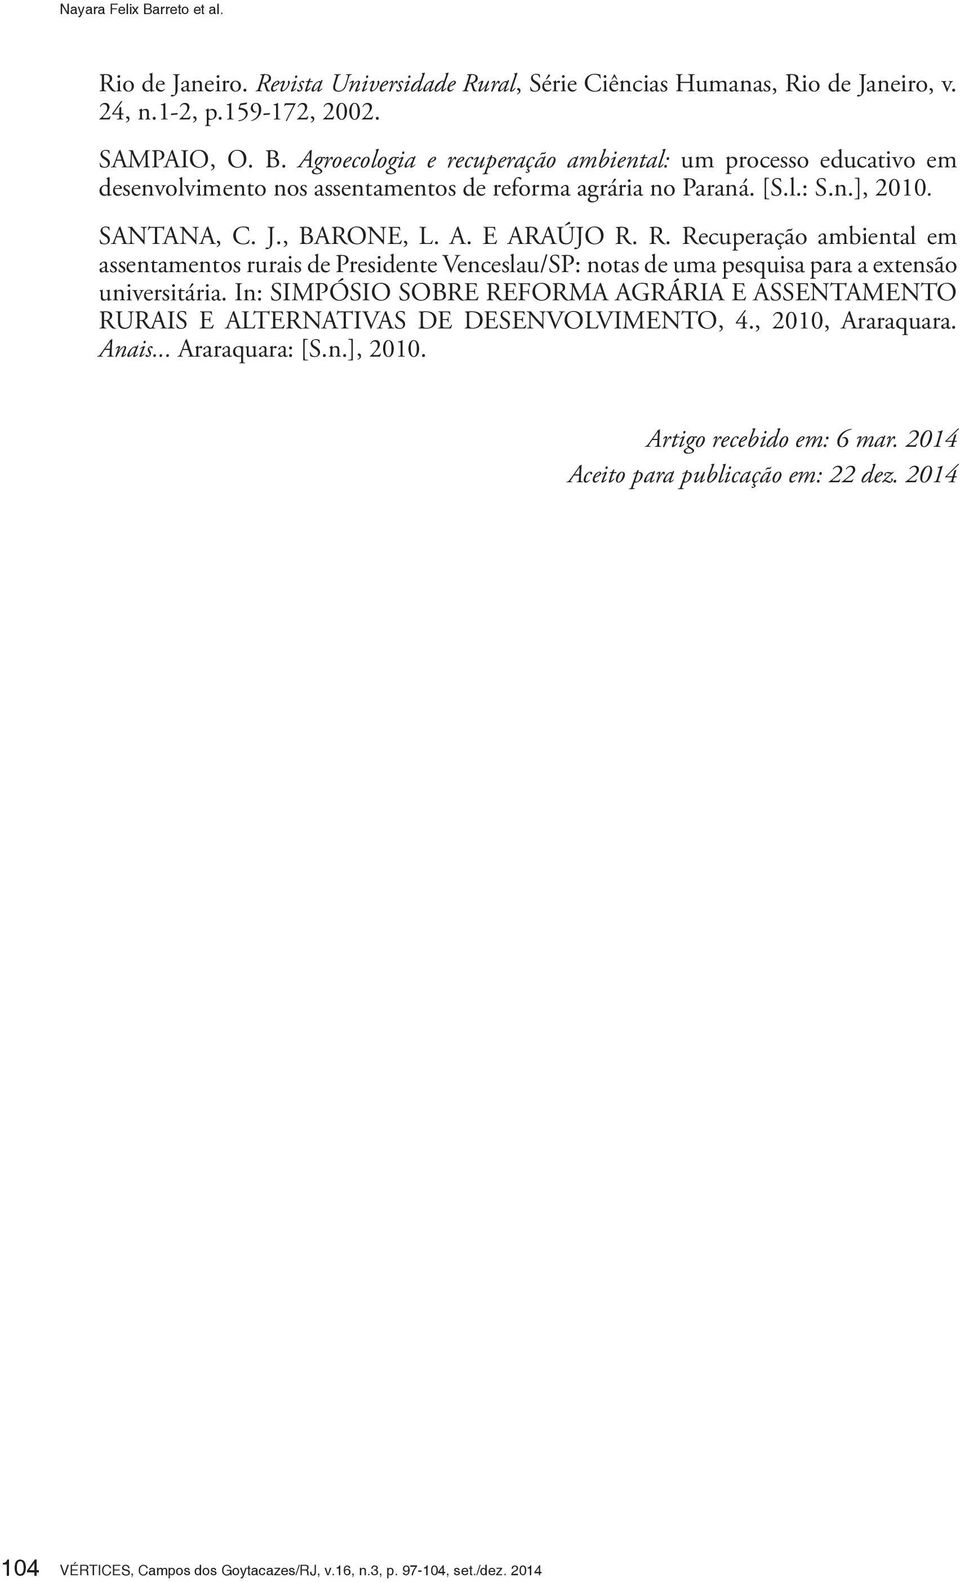 R. Recuperação ambiental em assentamentos rurais de Presidente Venceslau/SP: notas de uma pesquisa para a extensão universitária.